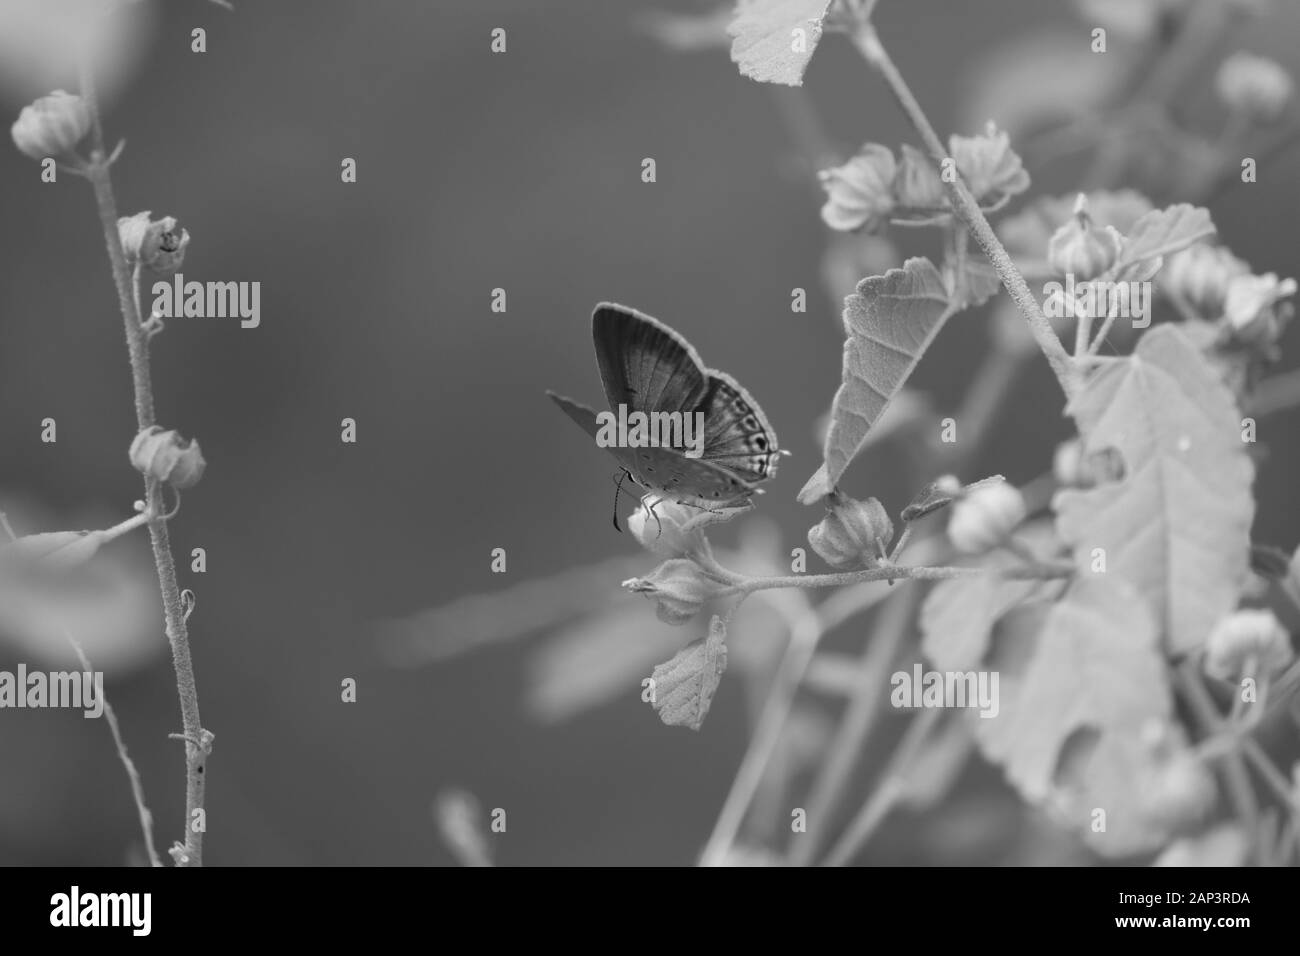 Butterfly, insetto,macro closeup shot di butterfly sullo sfondo monocromo Foto Stock